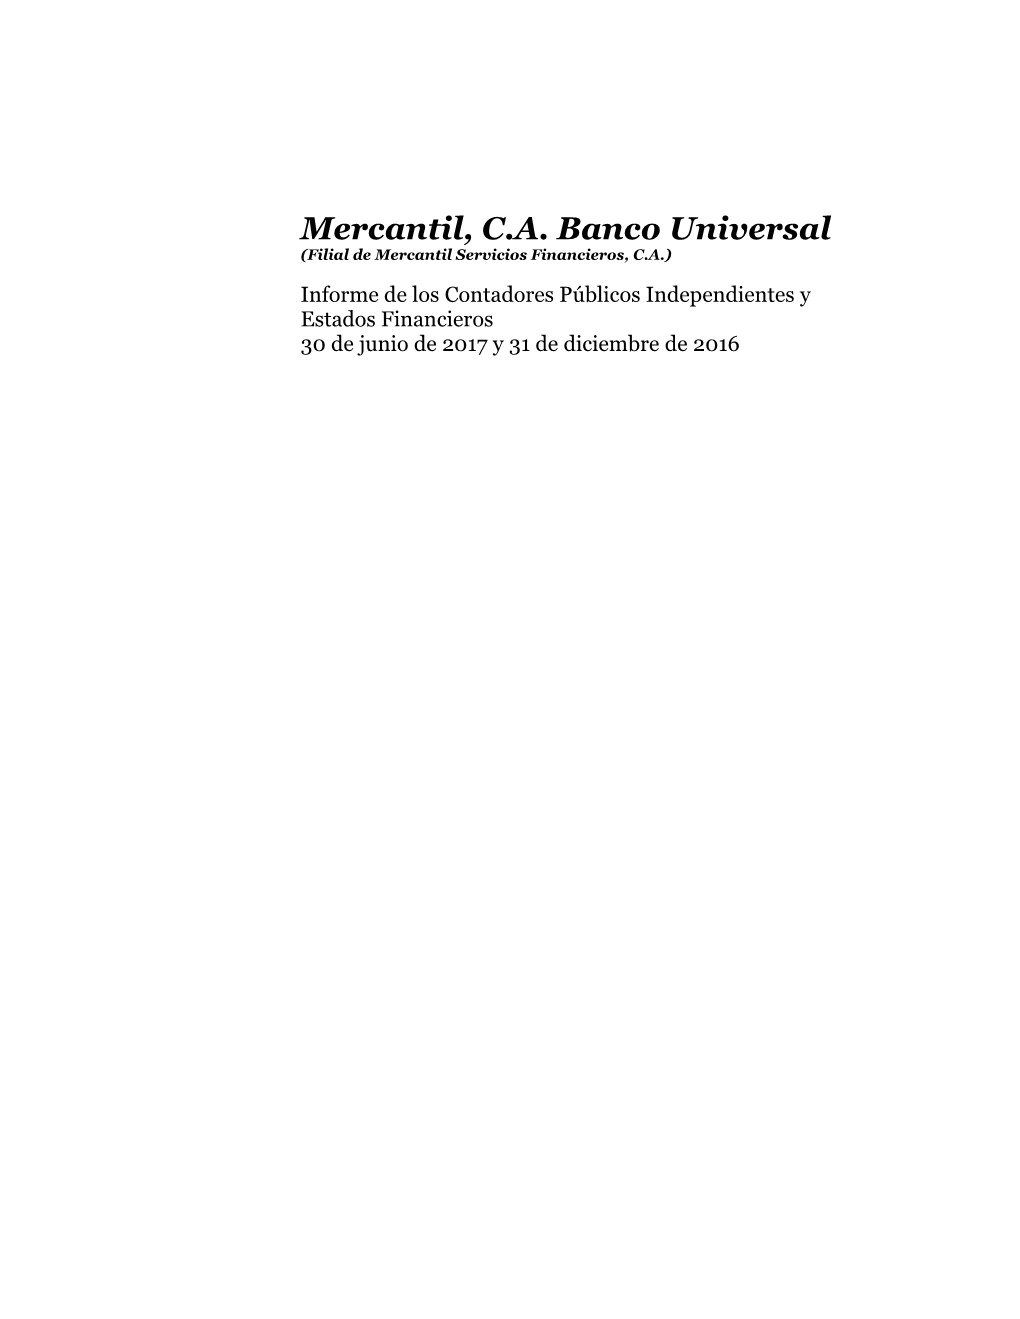 Mercantil, C.A. Banco Universal (Filial De Mercantil Servicios Financieros, C.A.)